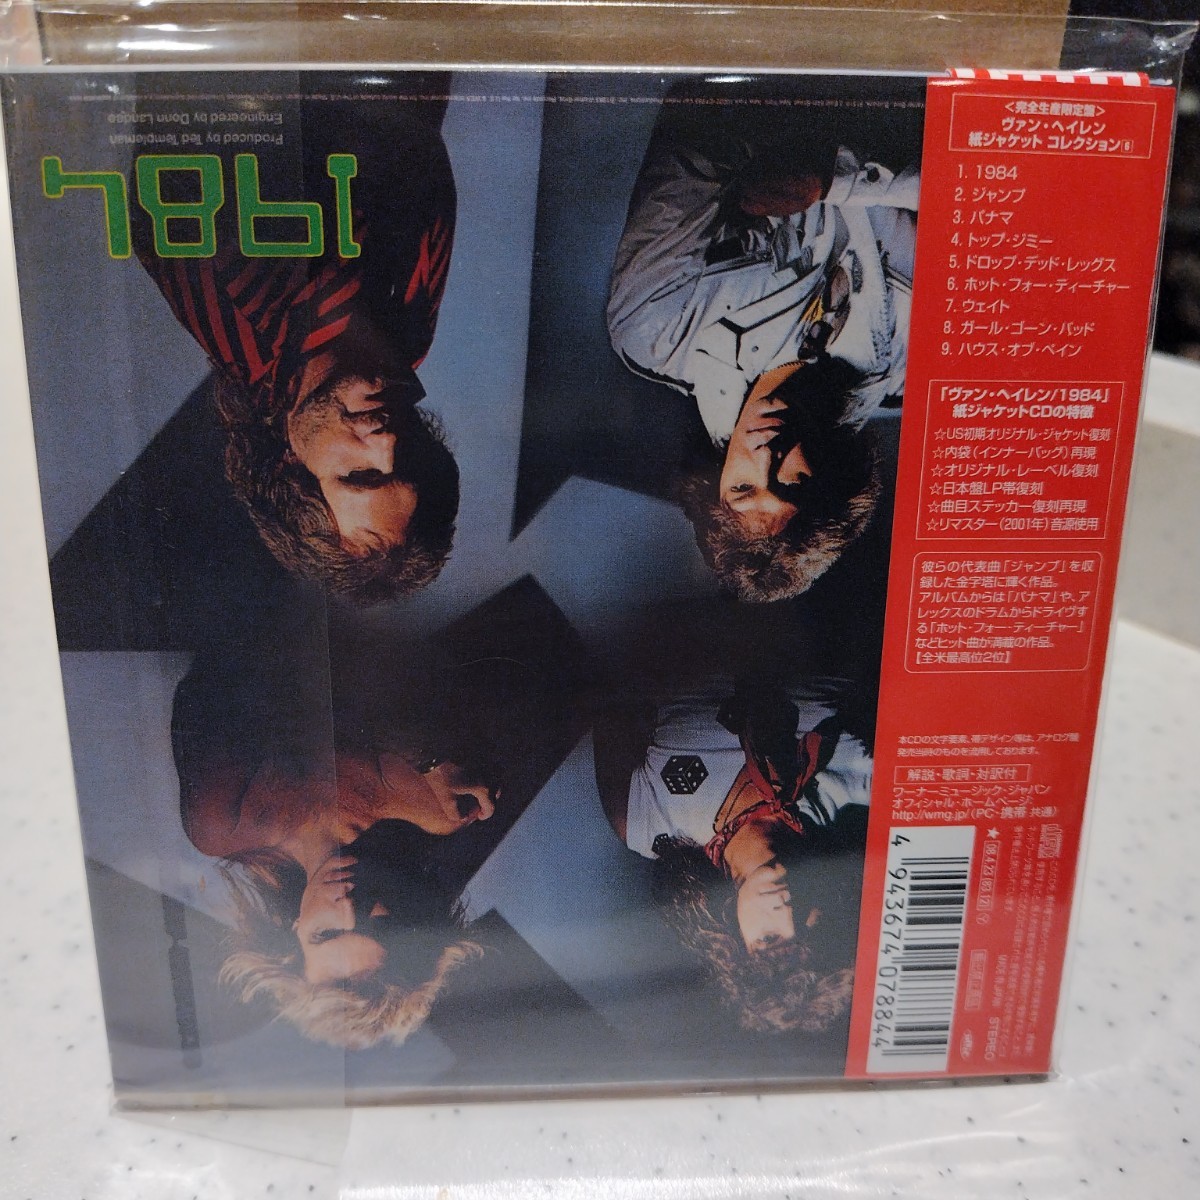  Van Halen 1984 完全生産限定盤 紙ジャケット仕様_画像2